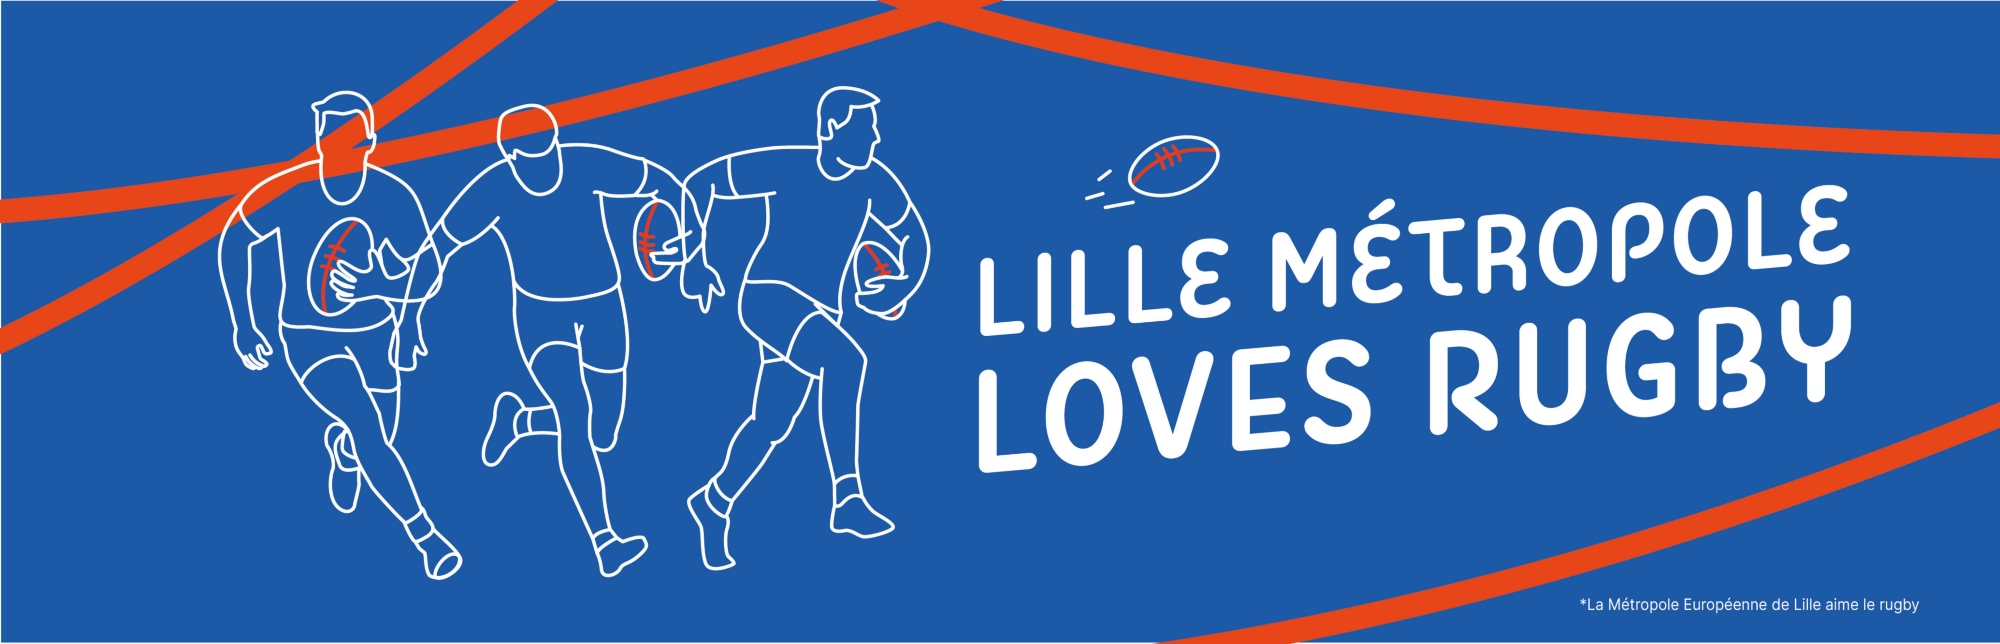 Lille Métropole loves rugby